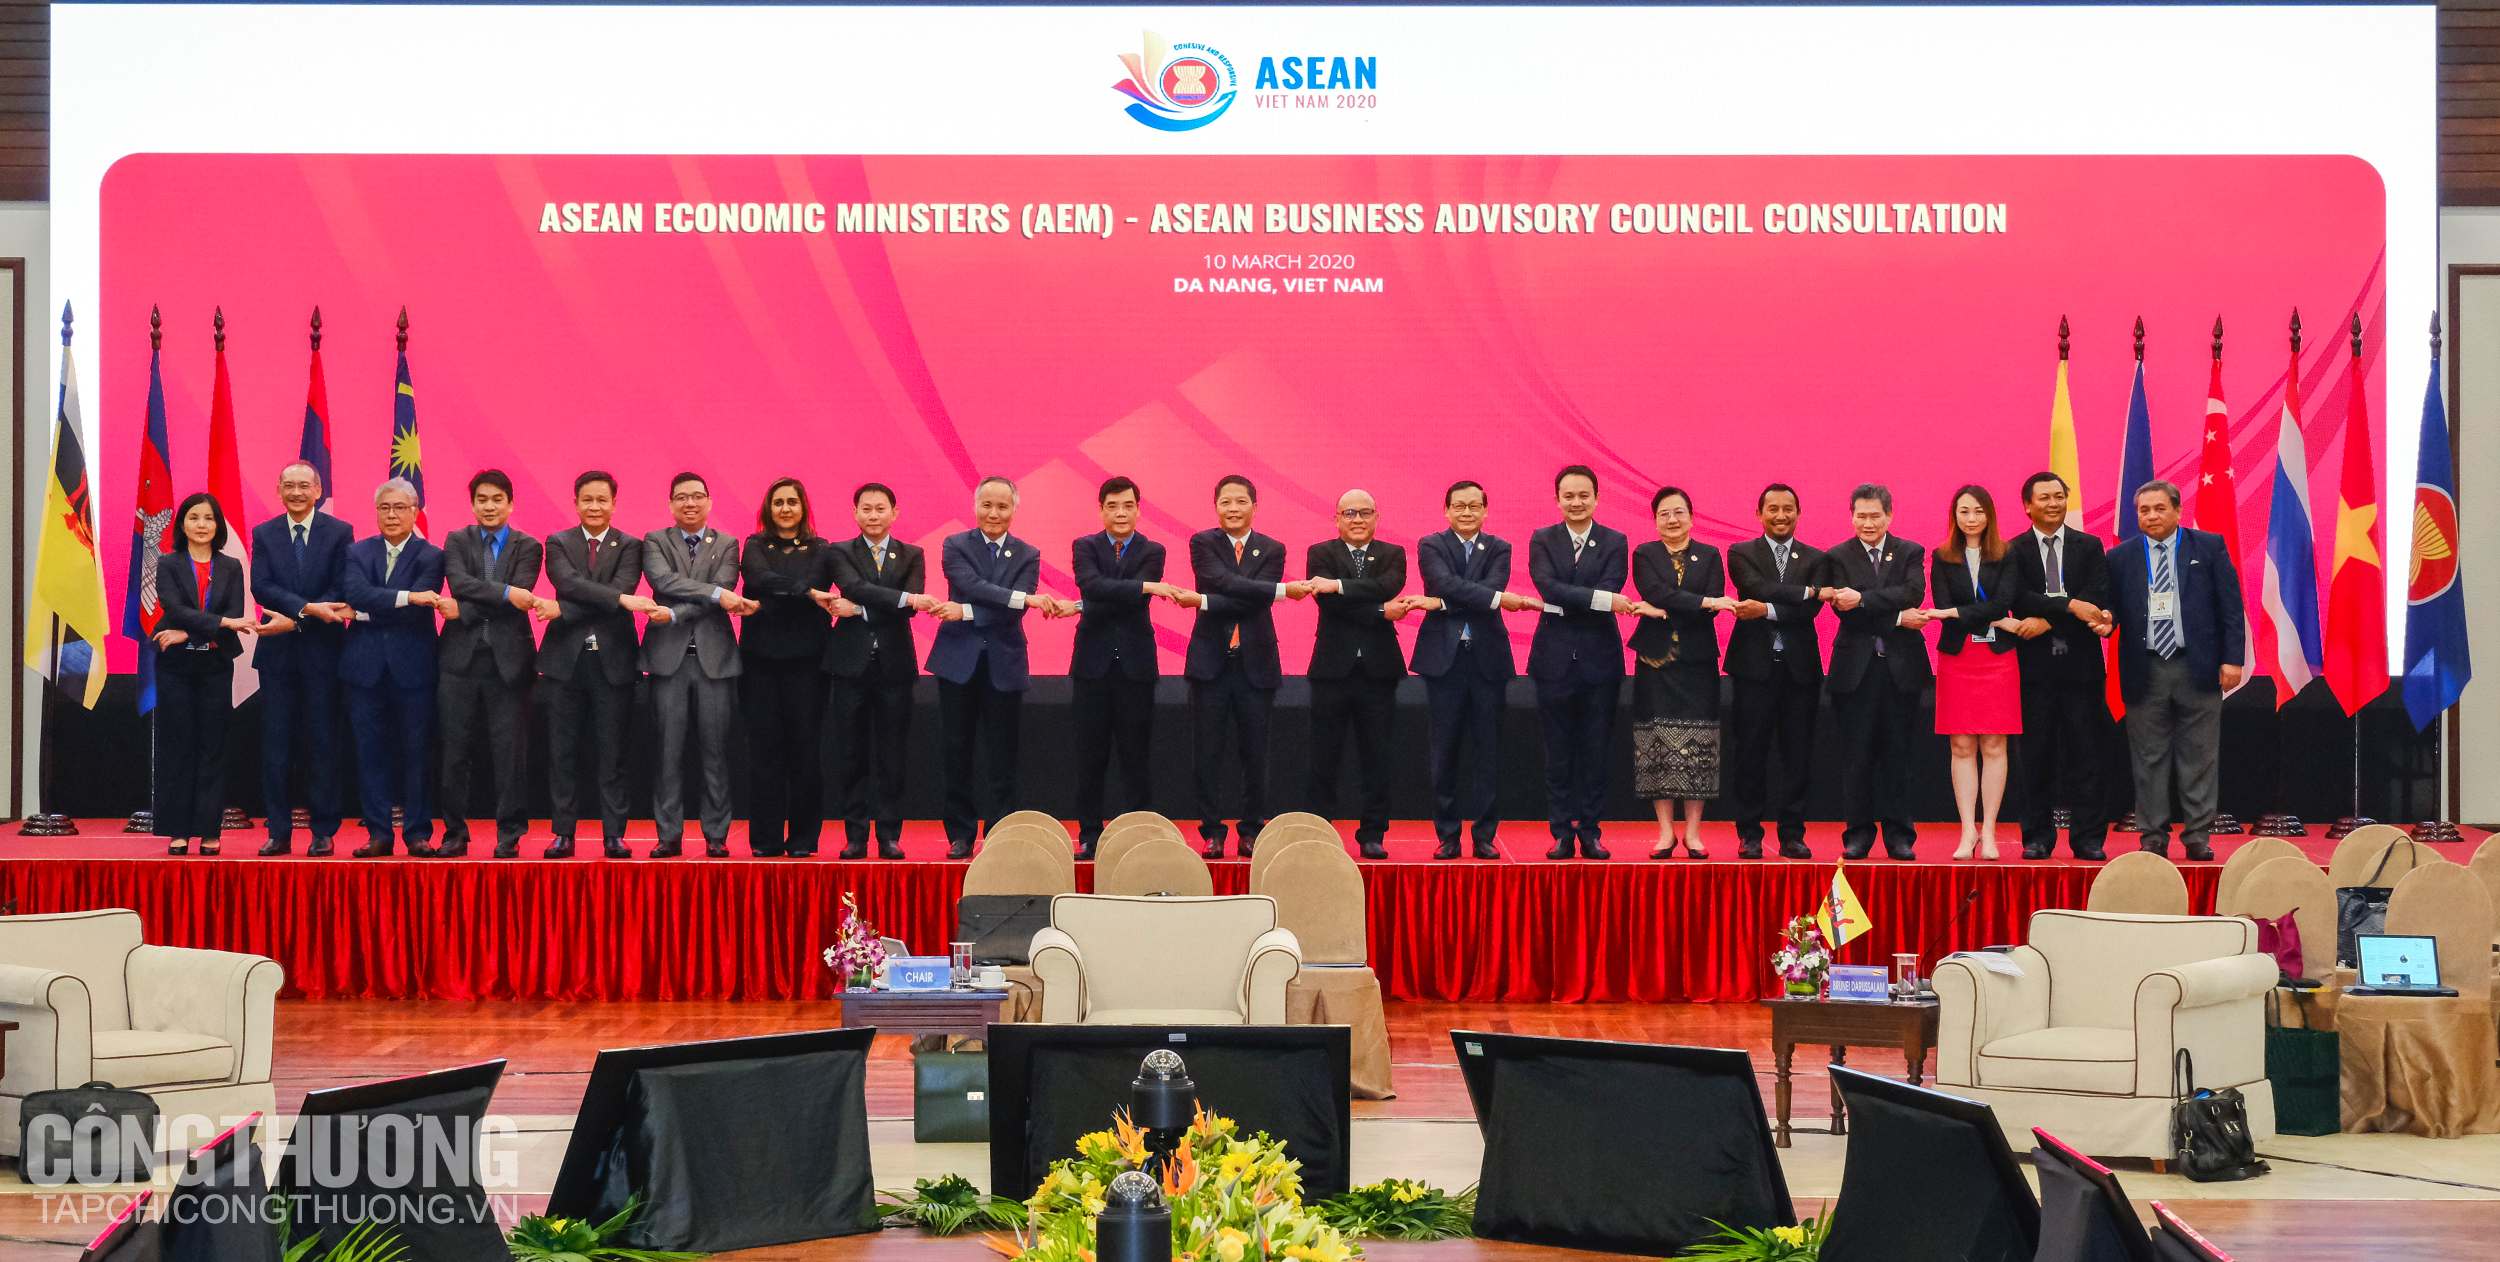 Đại diện các nước tại Hội nghị Bộ trưởng Kinh tế ASEAN hẹp lần thứ 26 (AEM 26)